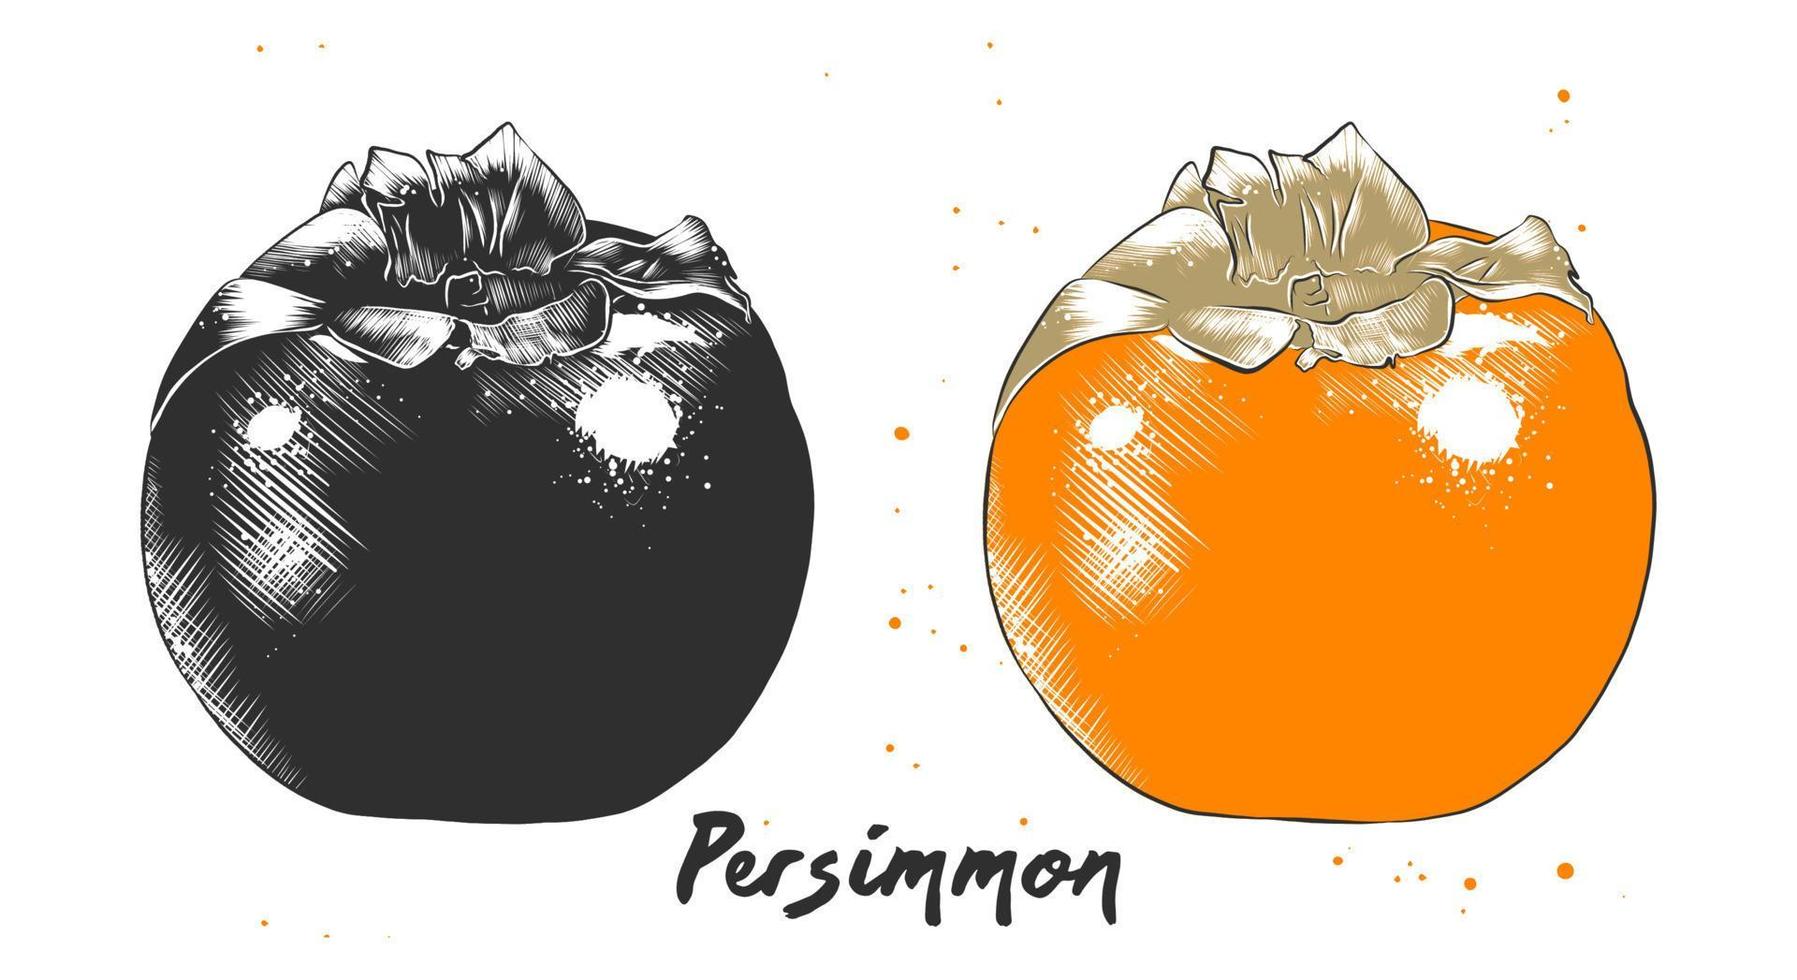 vektor graverat stil illustration för affischer, dekoration, förpackning och skriva ut. hand dragen skiss av persimon frukt i svartvit och färgrik. detaljerad vegetarian mat teckning.